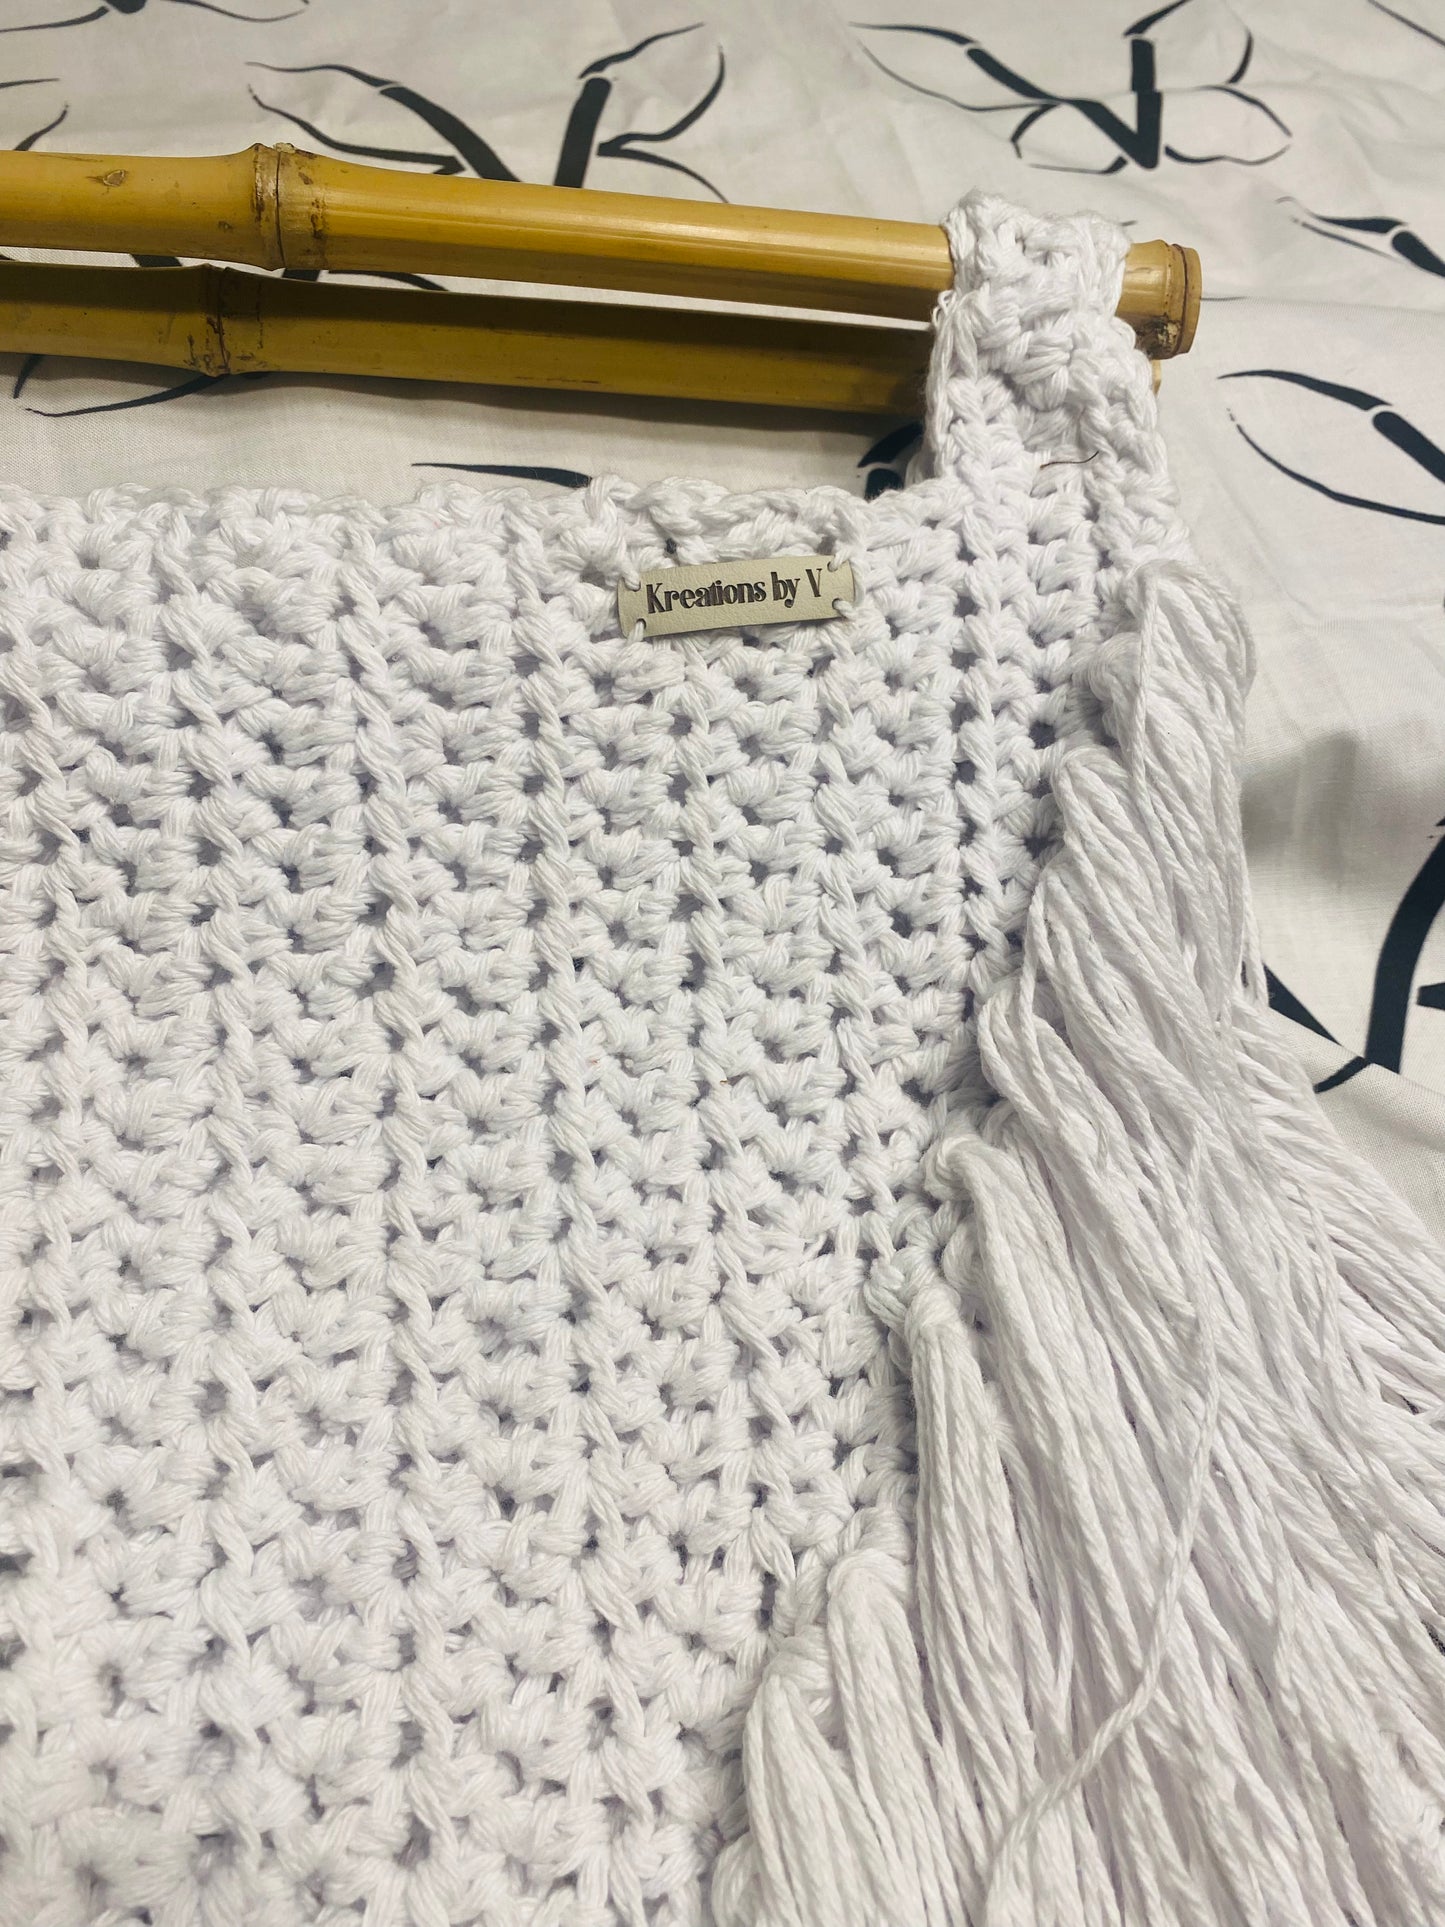 Cascade Bamboo fringe, Kreations by V Luxury Crochet Handbag